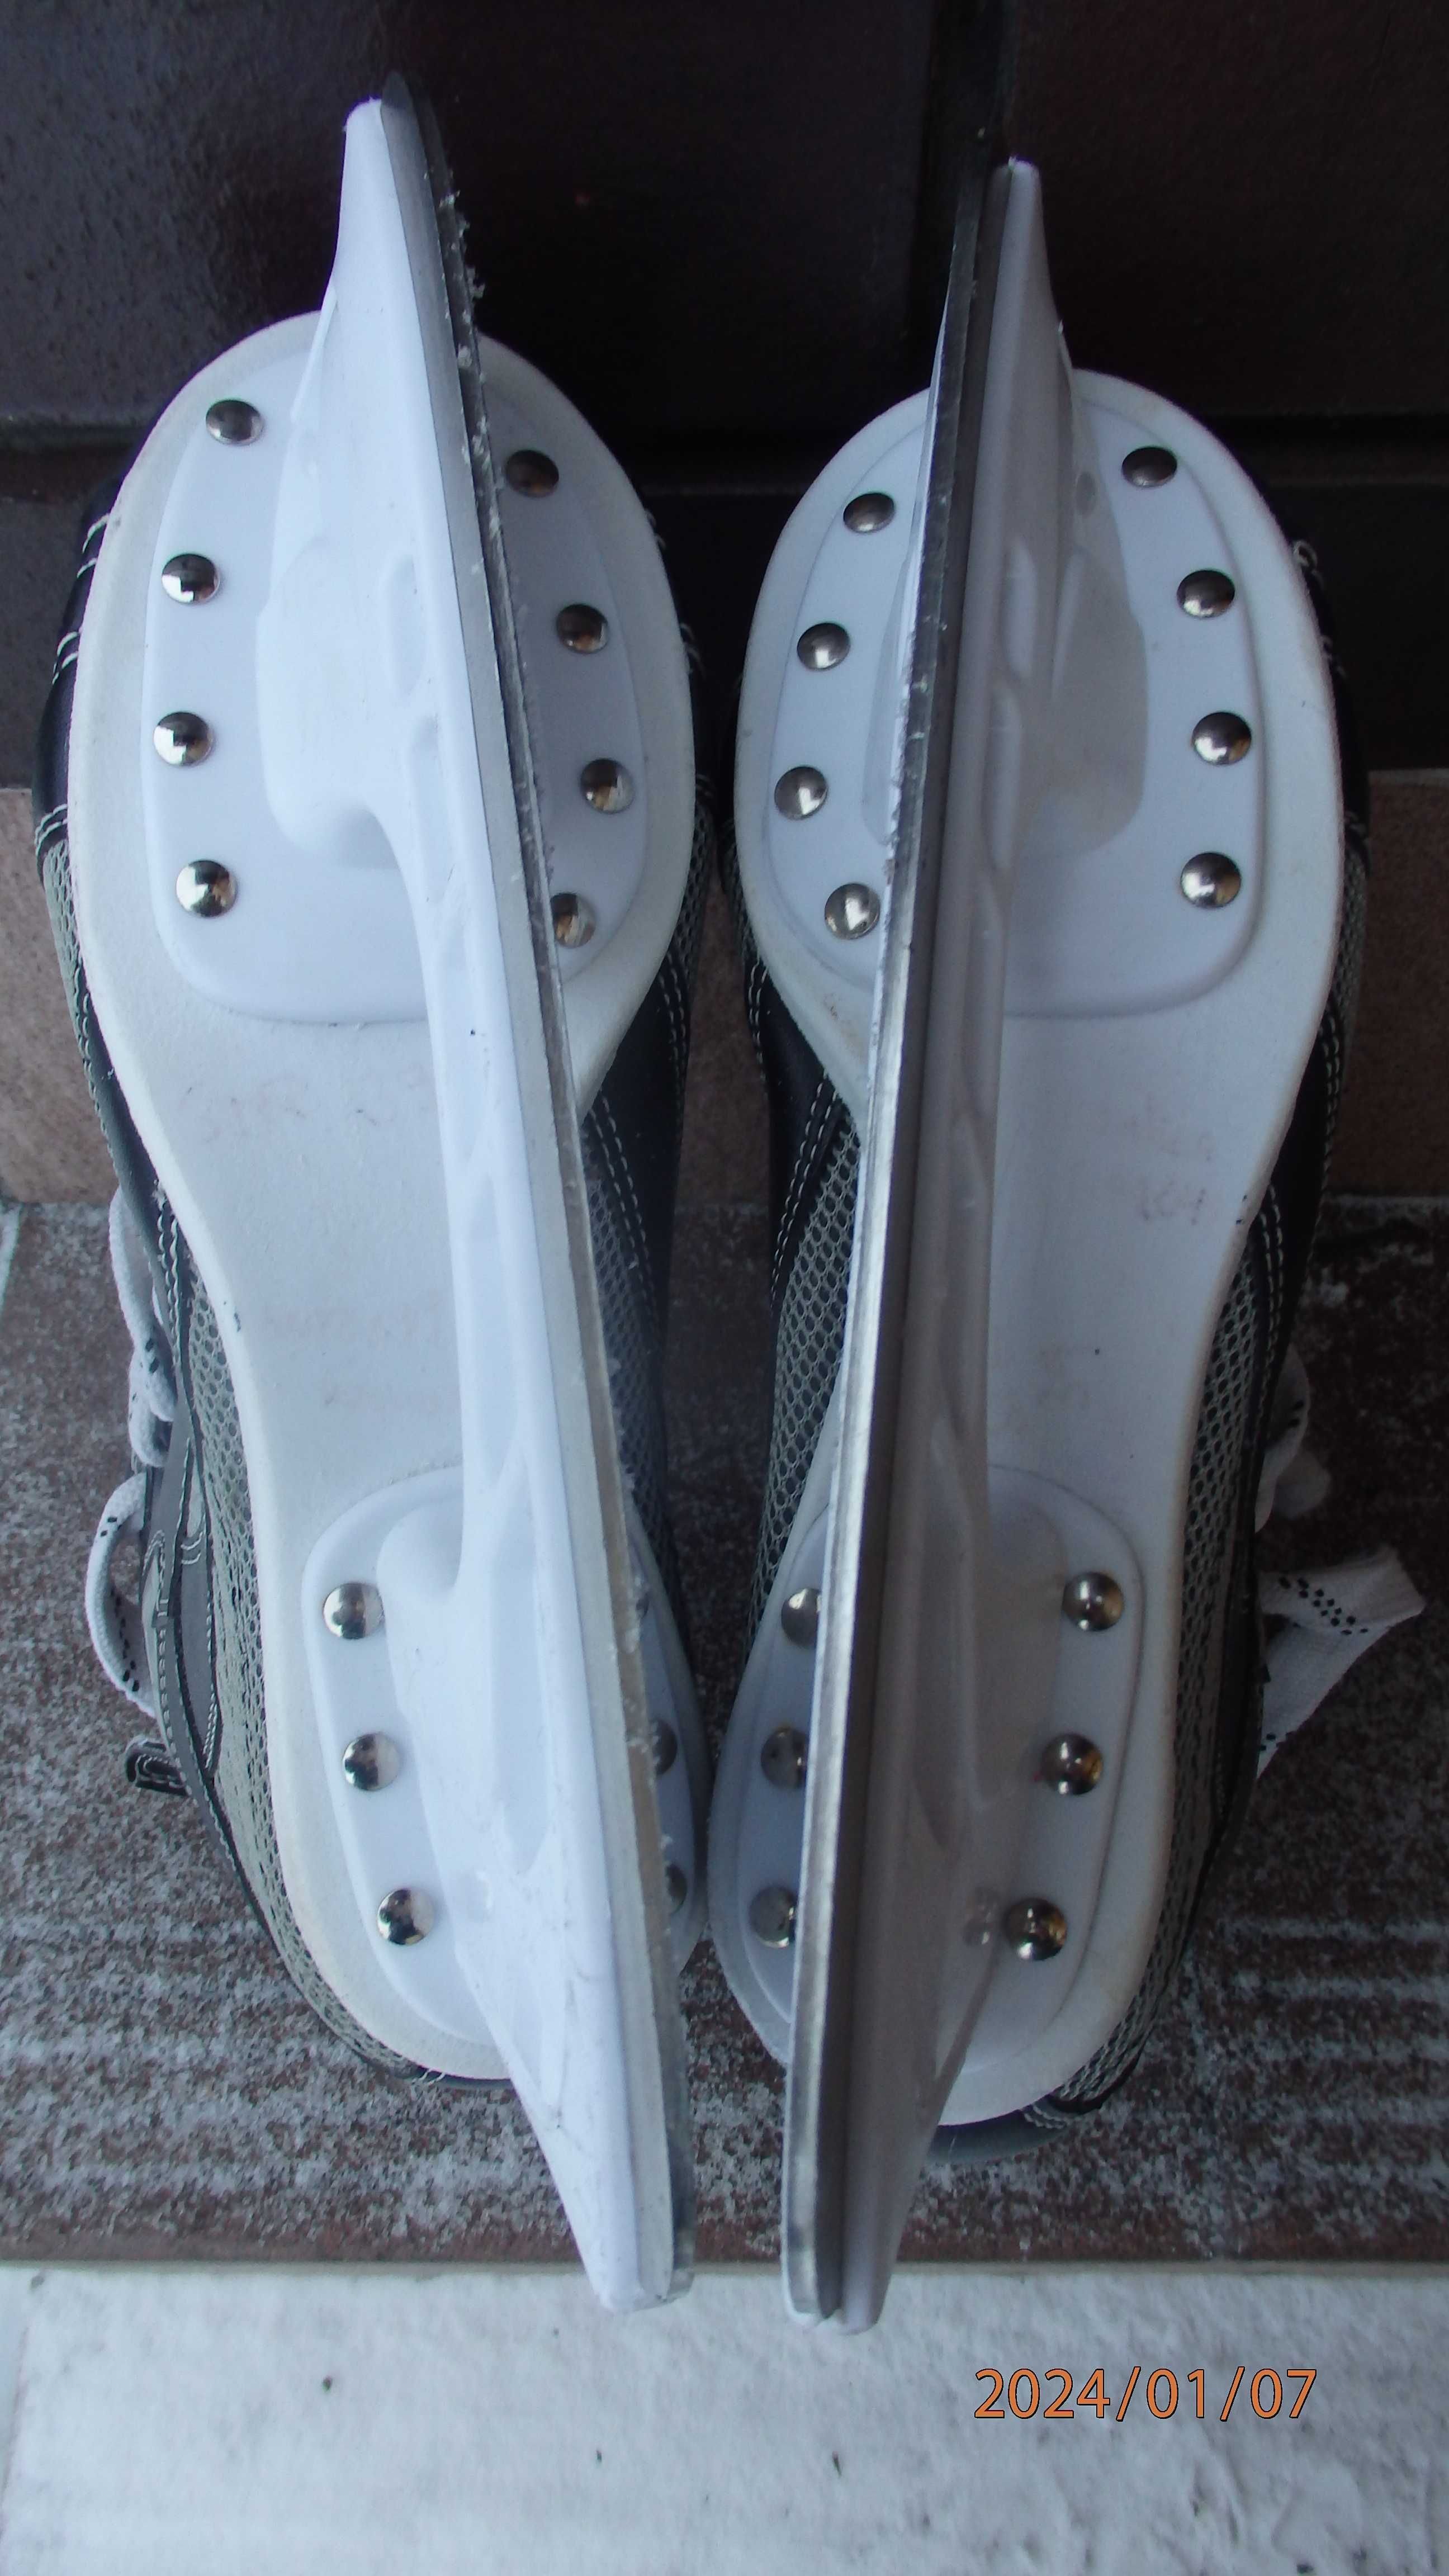 Buty chłopięce z łyżwami firmy Team Max rozmiar 39.